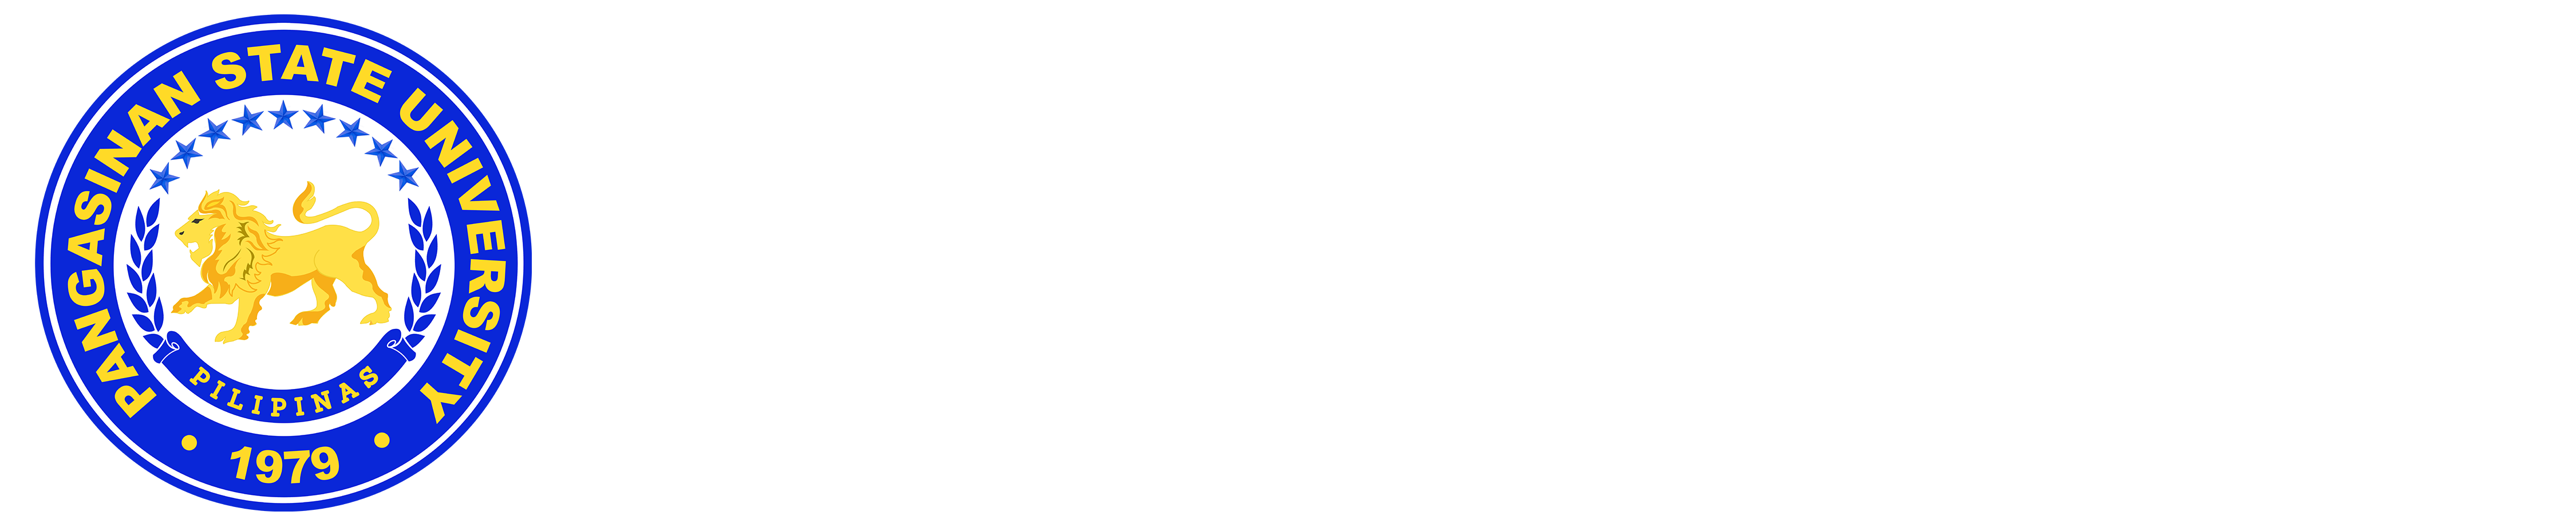 cel-debuts-grammarly-utilization-in-psu-pangasinan-state-university